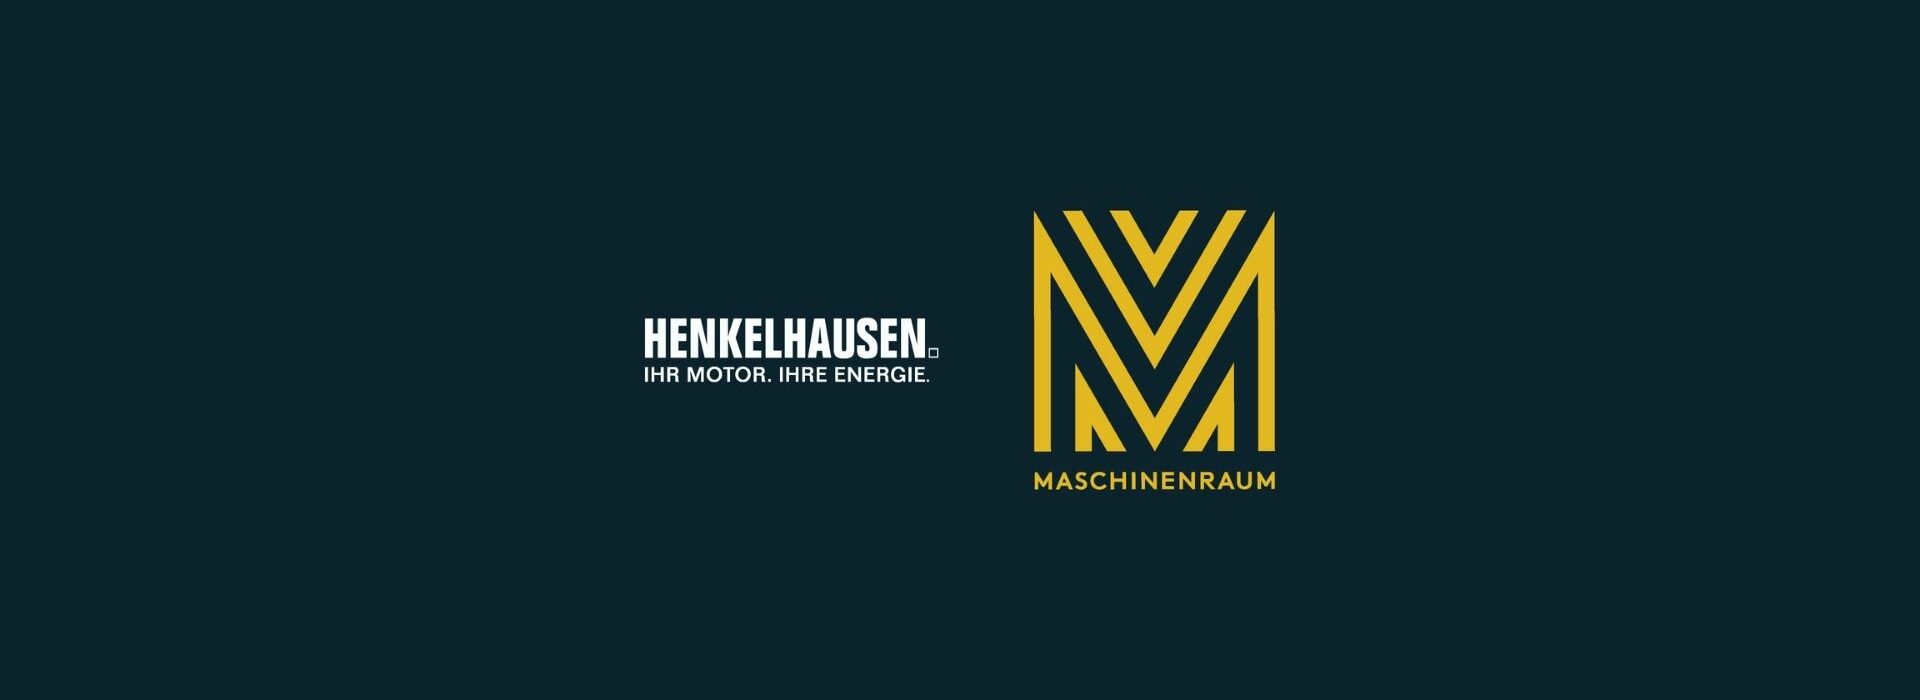 Maschinenraum_Henkelhausen